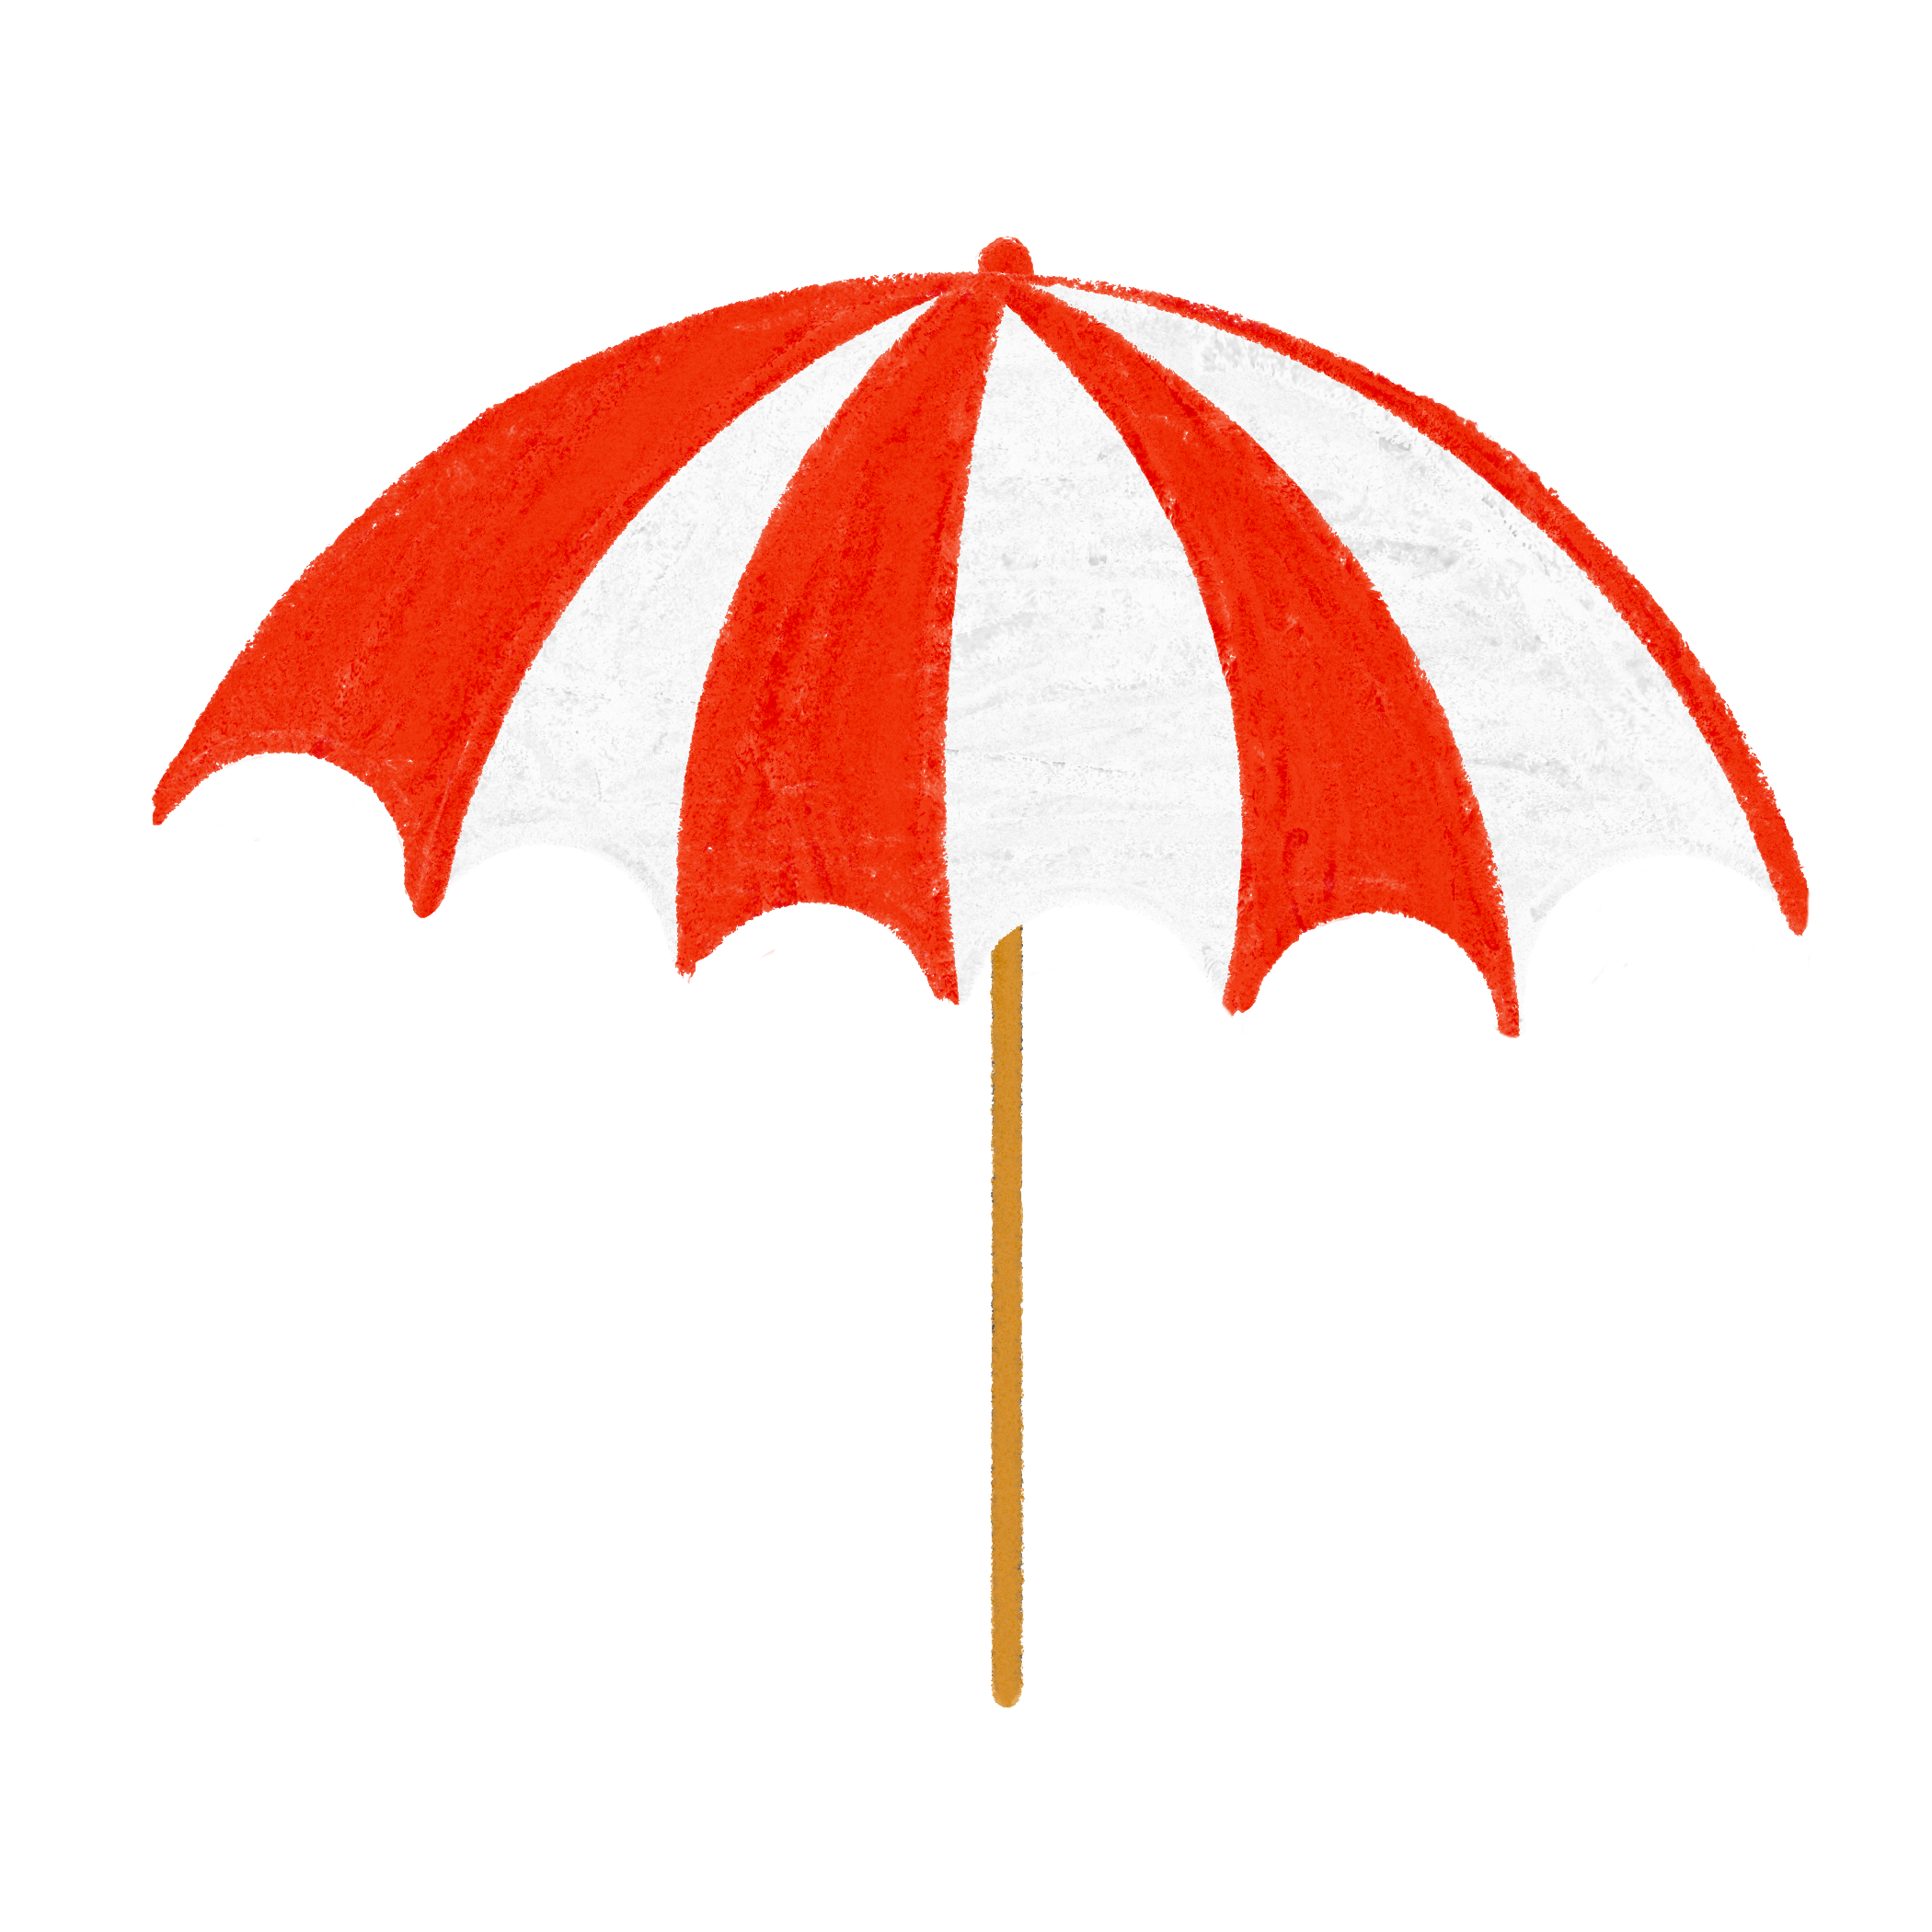 クレヨン風のかわいい赤いパラソル・傘のイラスト